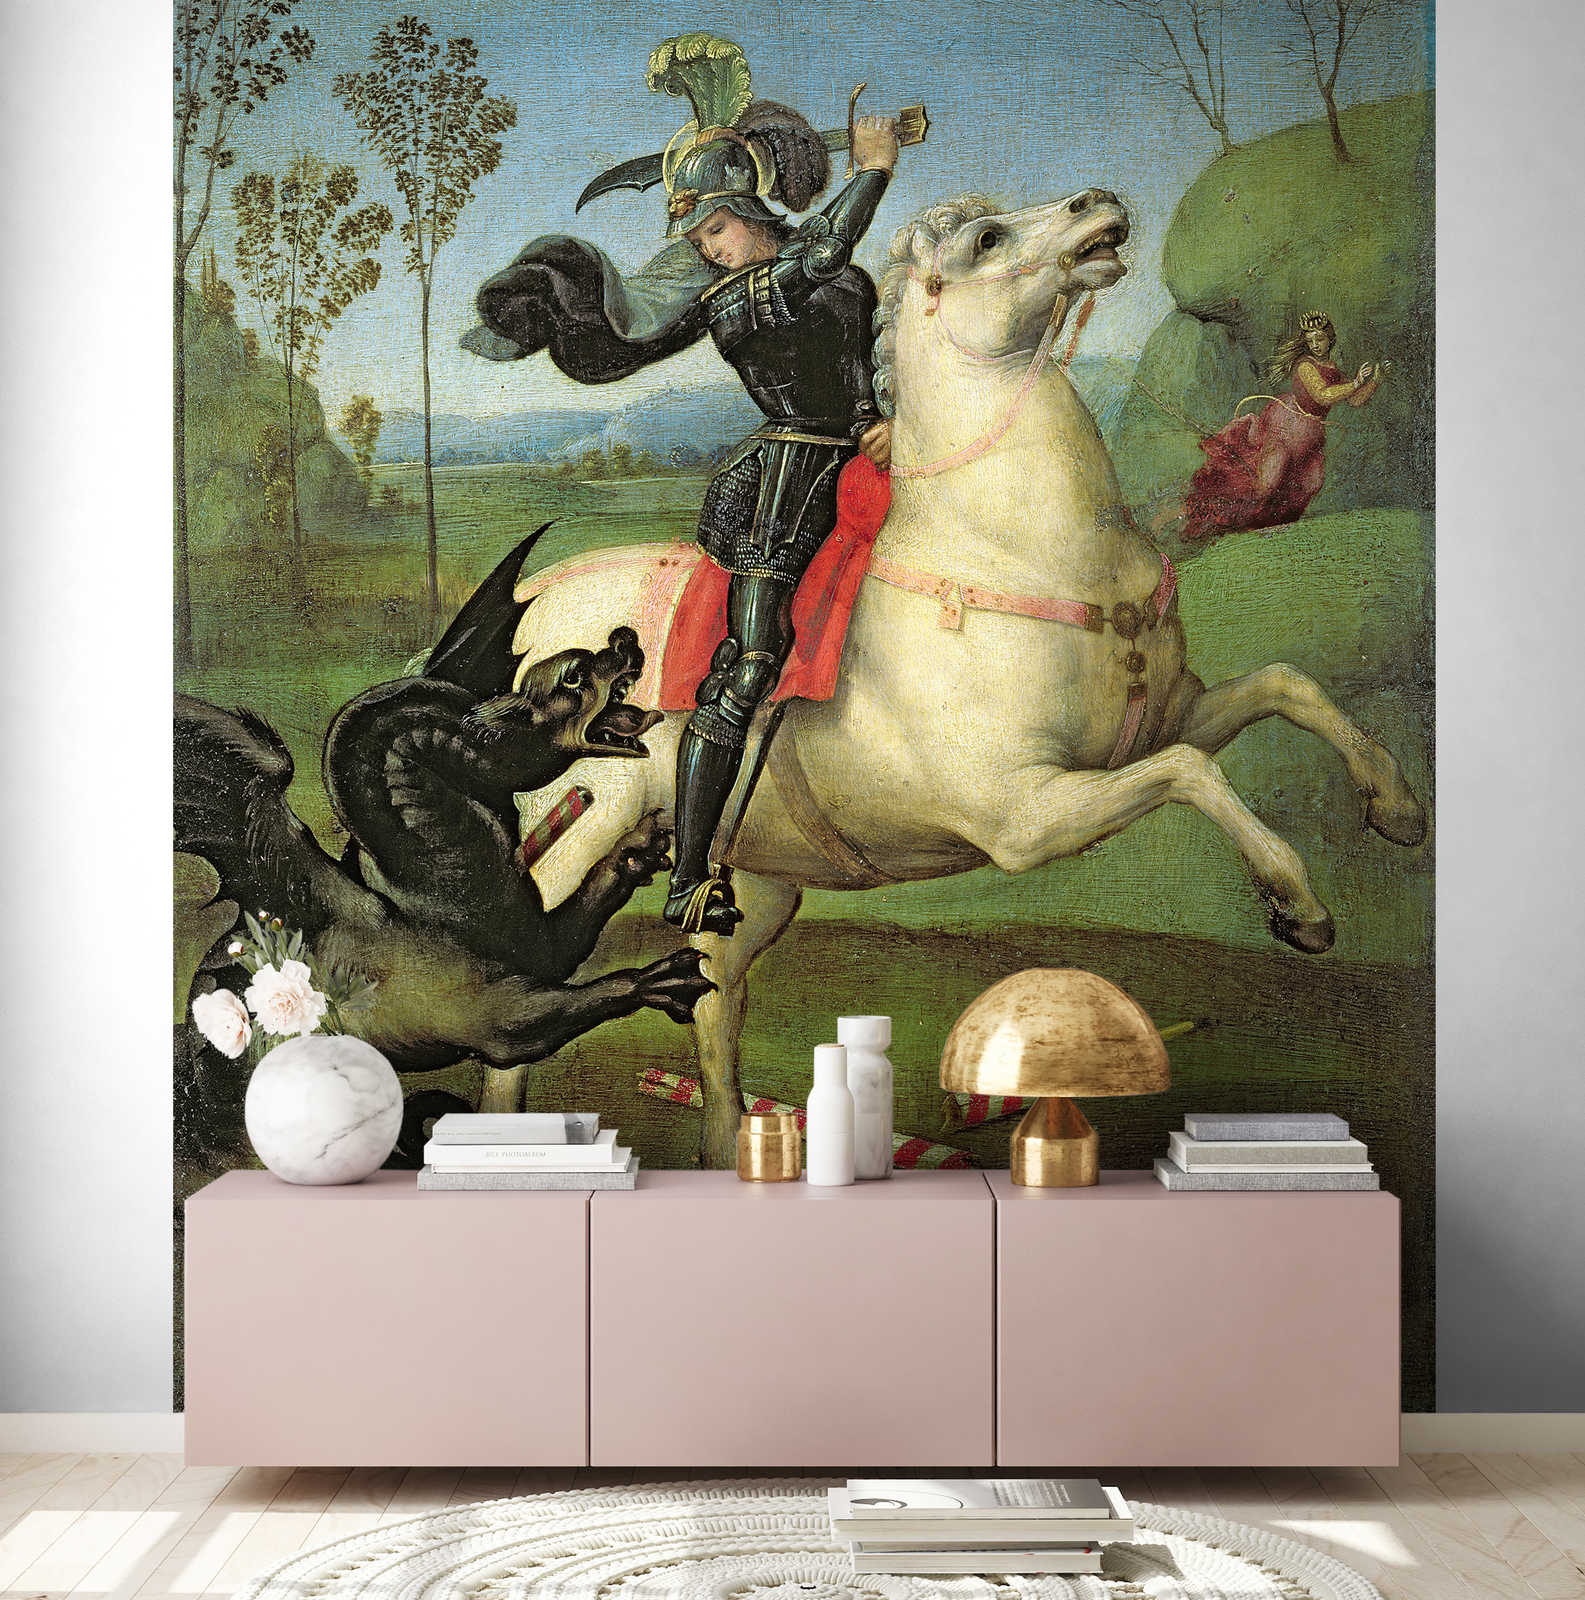             Sint Joris vecht tegen de draak" muurschildering door Rafaël
        